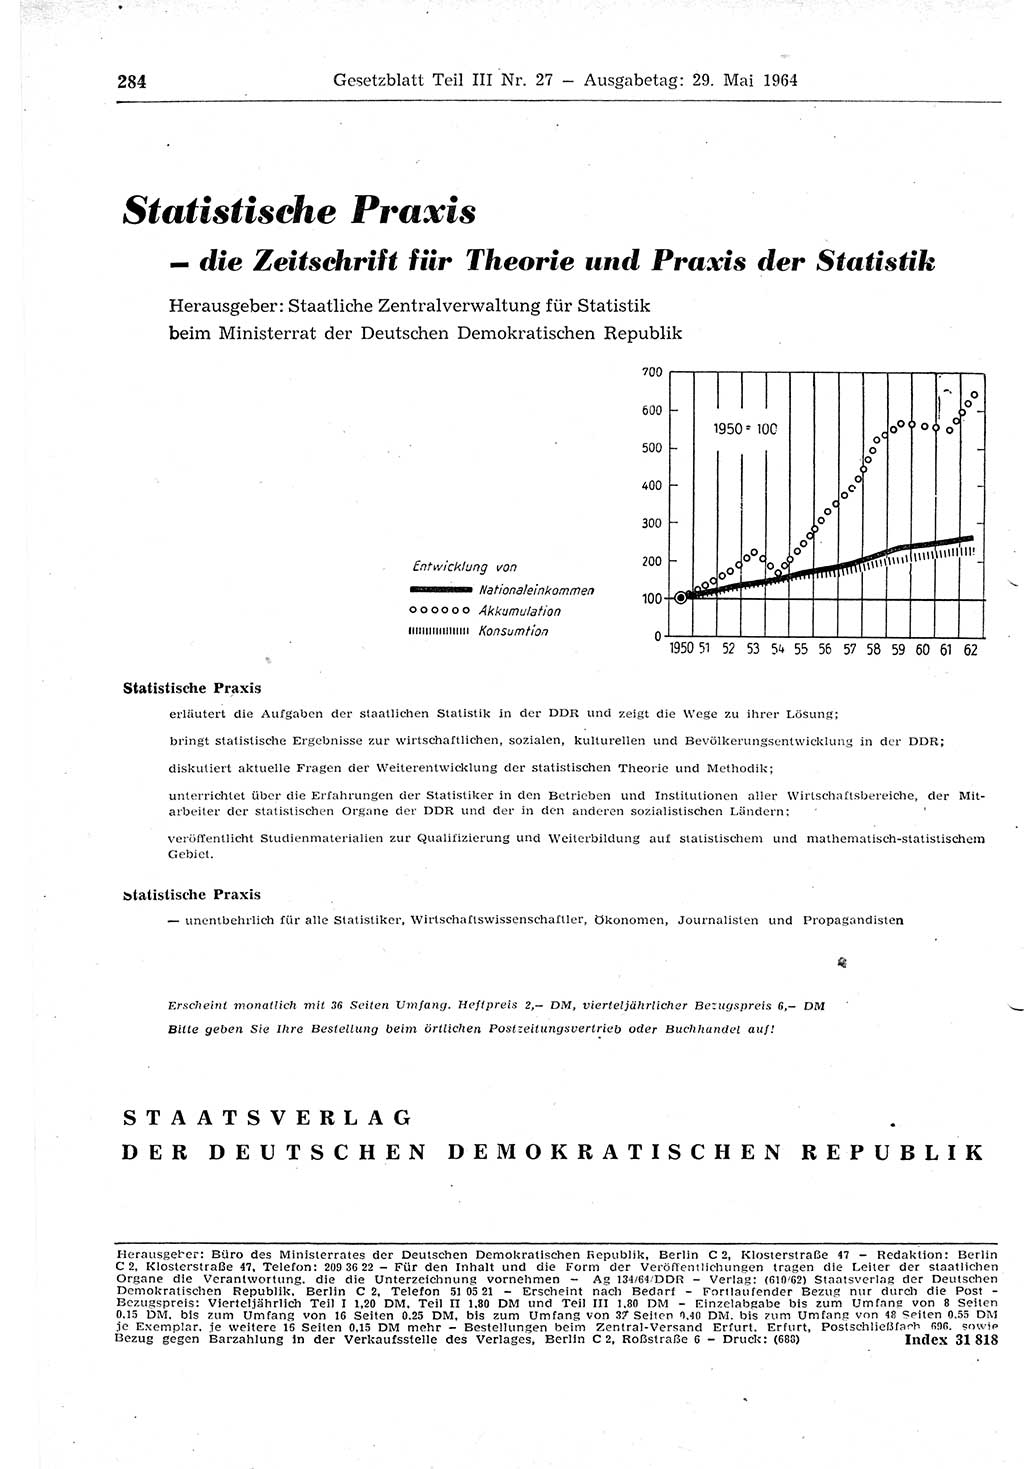 Gesetzblatt (GBl.) der Deutschen Demokratischen Republik (DDR) Teil ⅠⅠⅠ 1964, Seite 284 (GBl. DDR ⅠⅠⅠ 1964, S. 284)